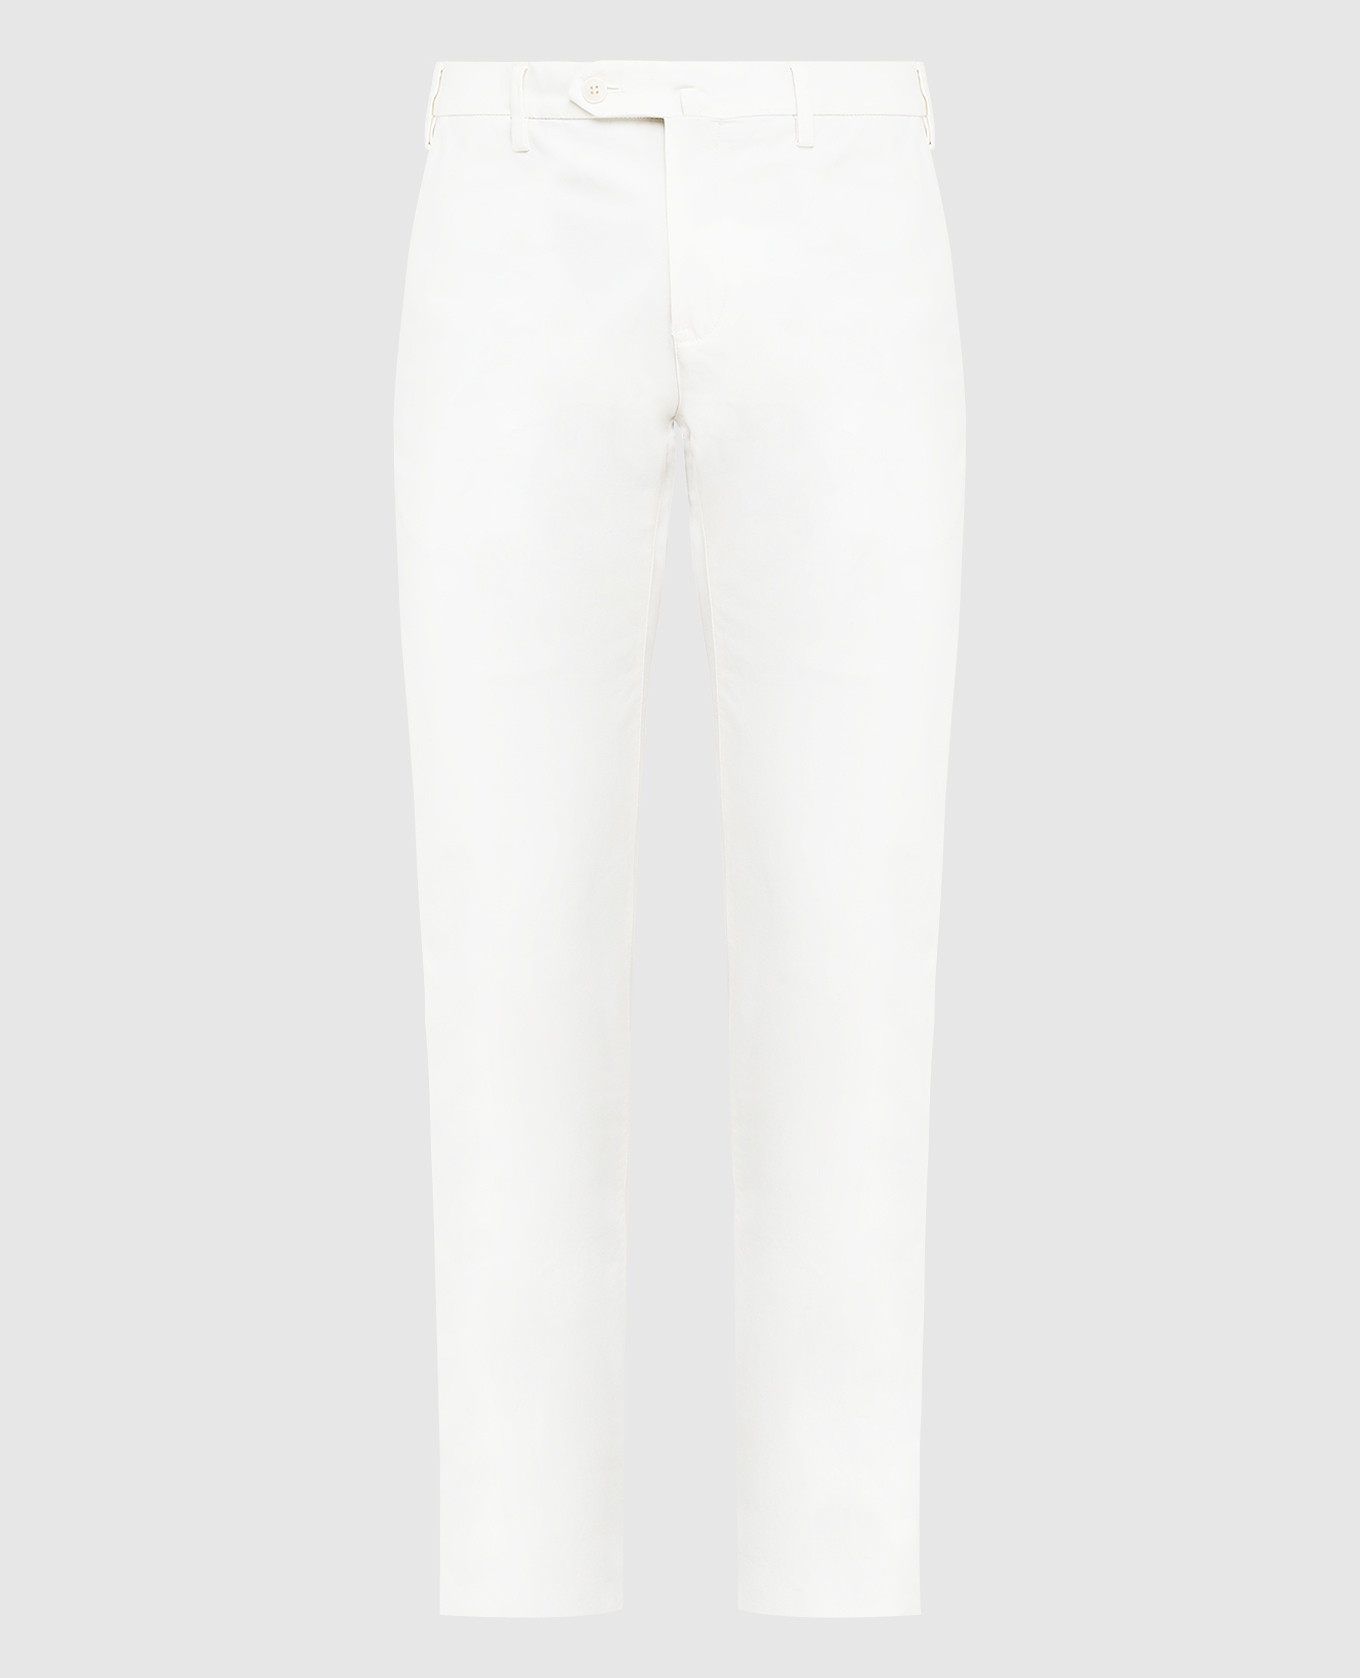 Light beige trousers